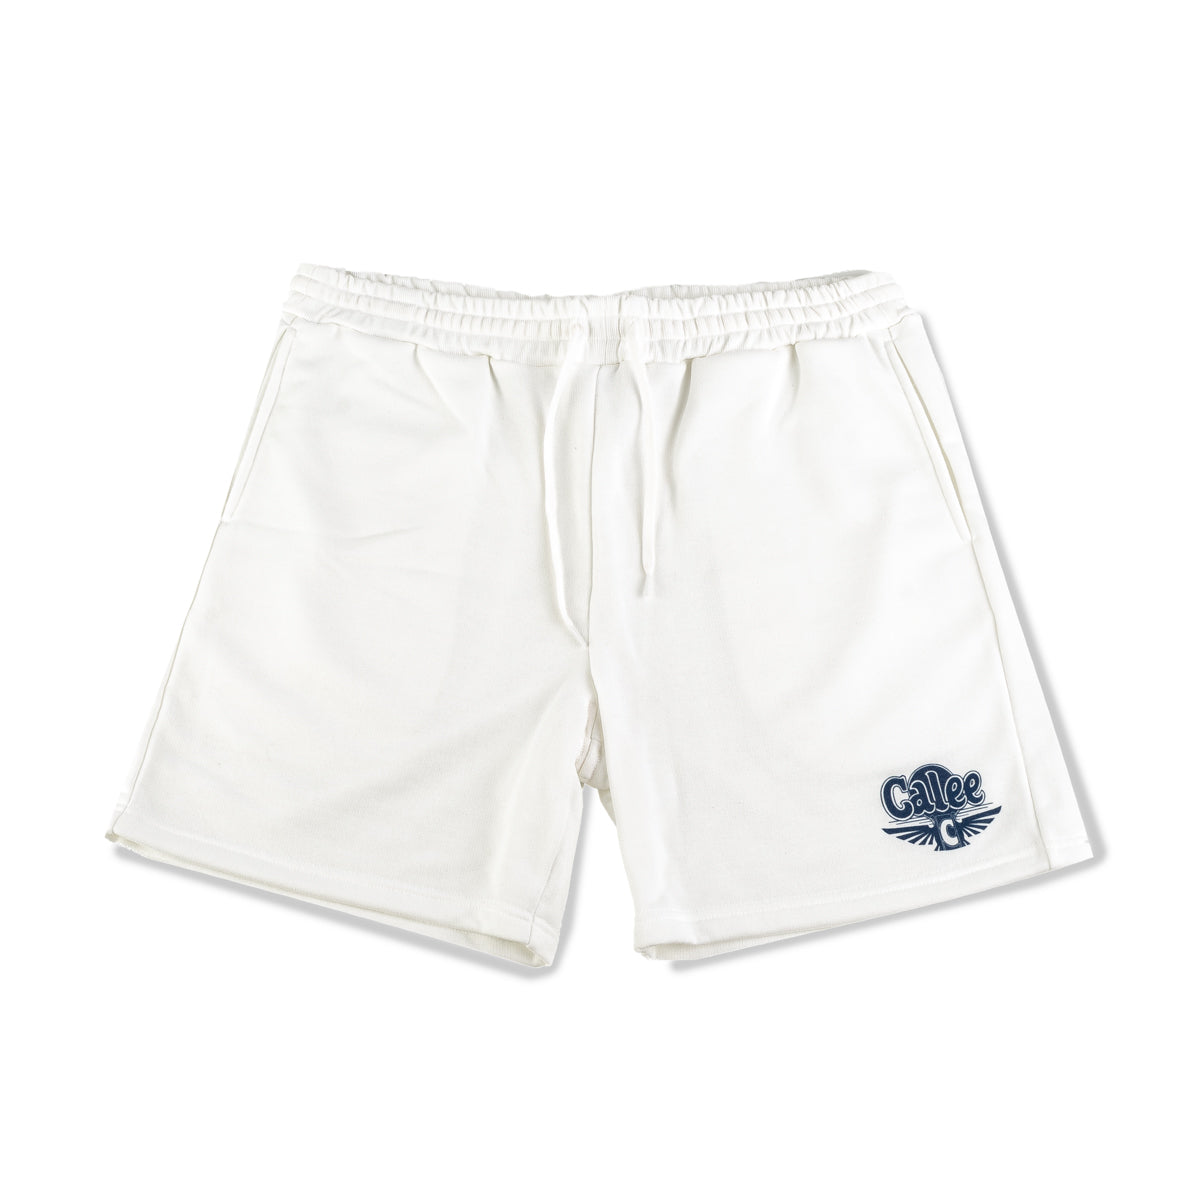 Aeroknot Sweat Shorts - White